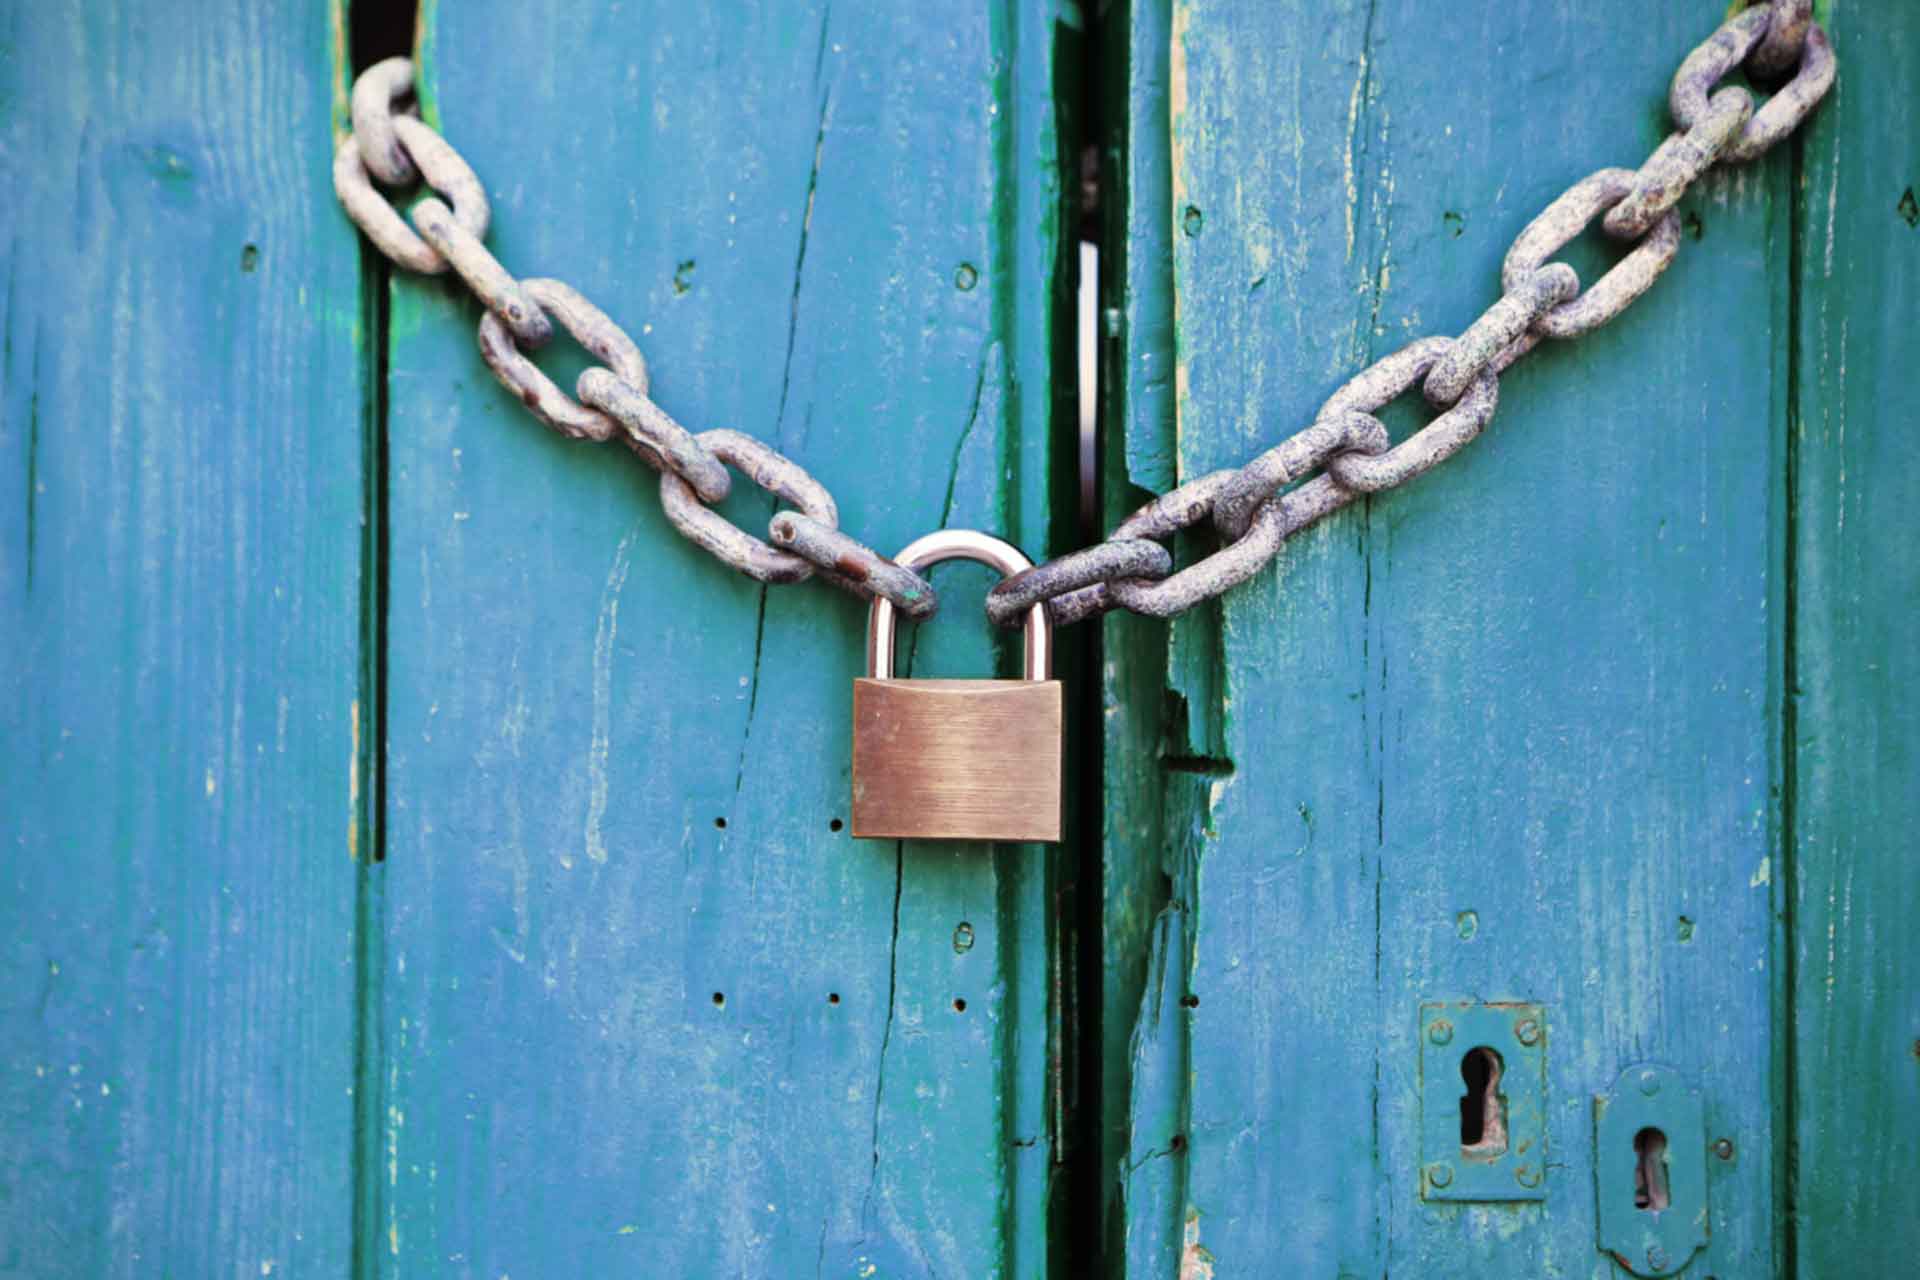 padlock and chain across a door